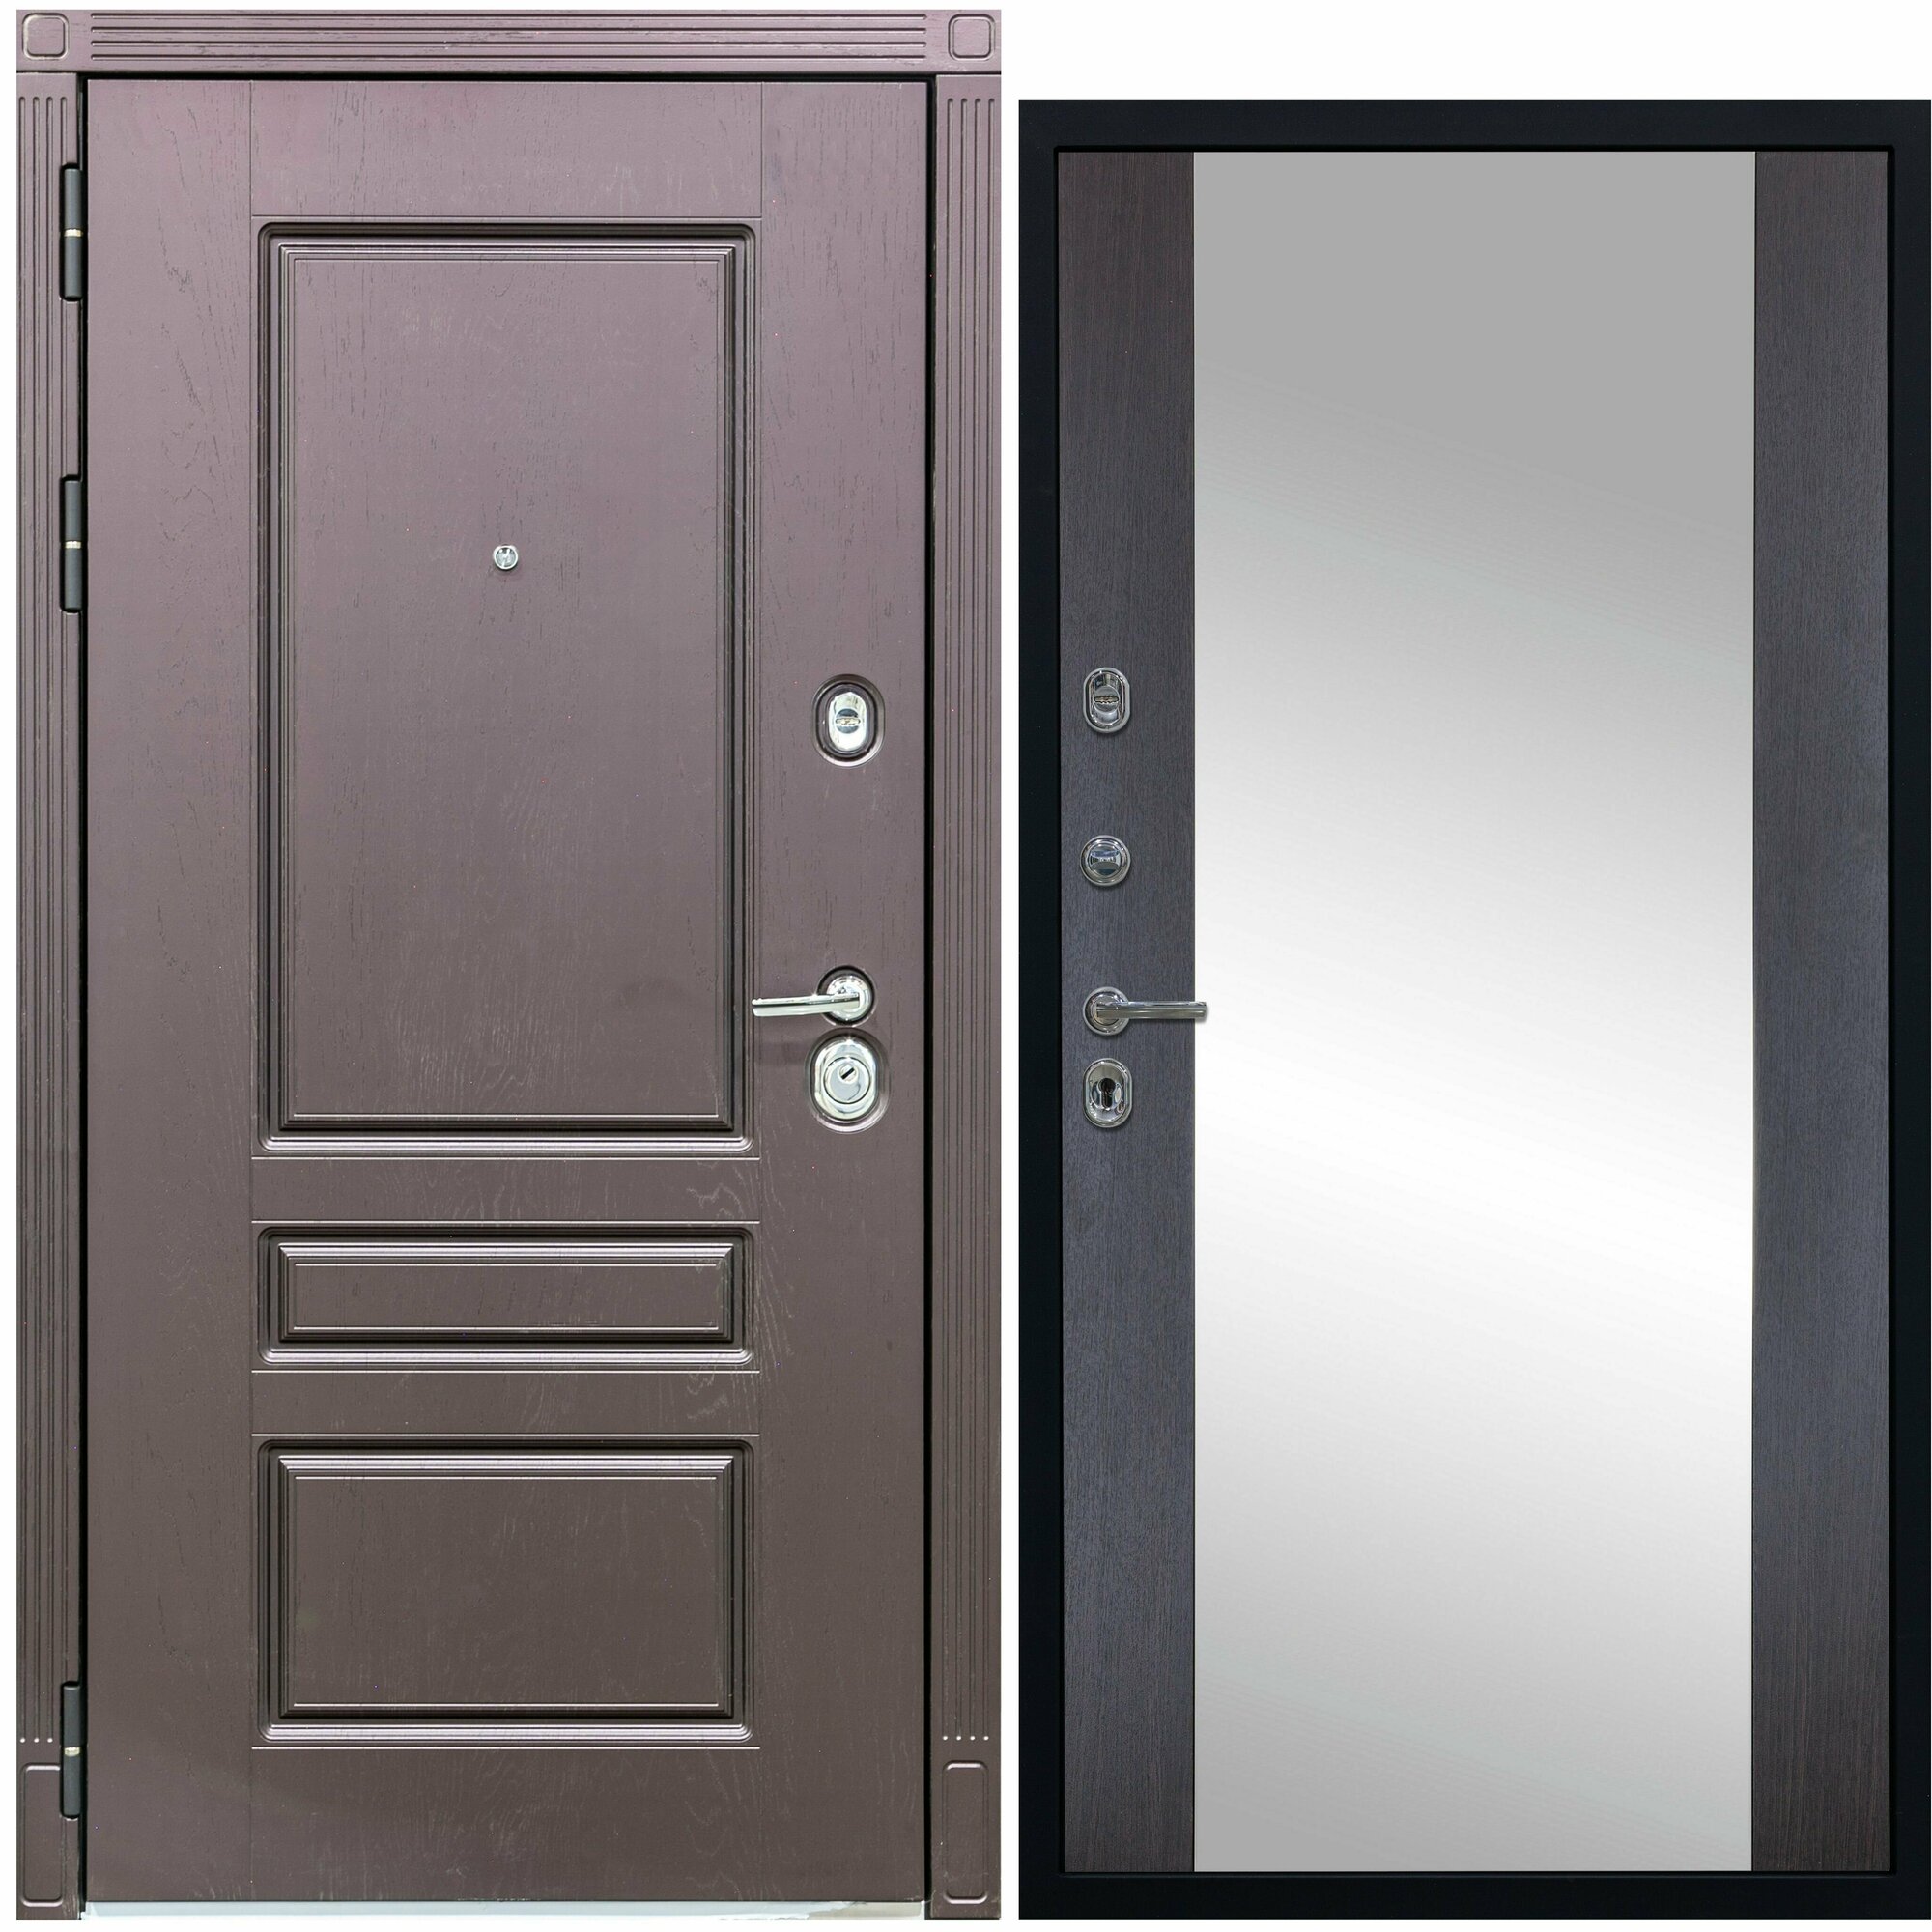 Дверь входная металлическая DIVA ДХ-27 Зеркало 2050x960 Левая Крафтовый дуб - Д15 Венге, тепло-шумоизоляция, антикоррозийная защита для квартиры